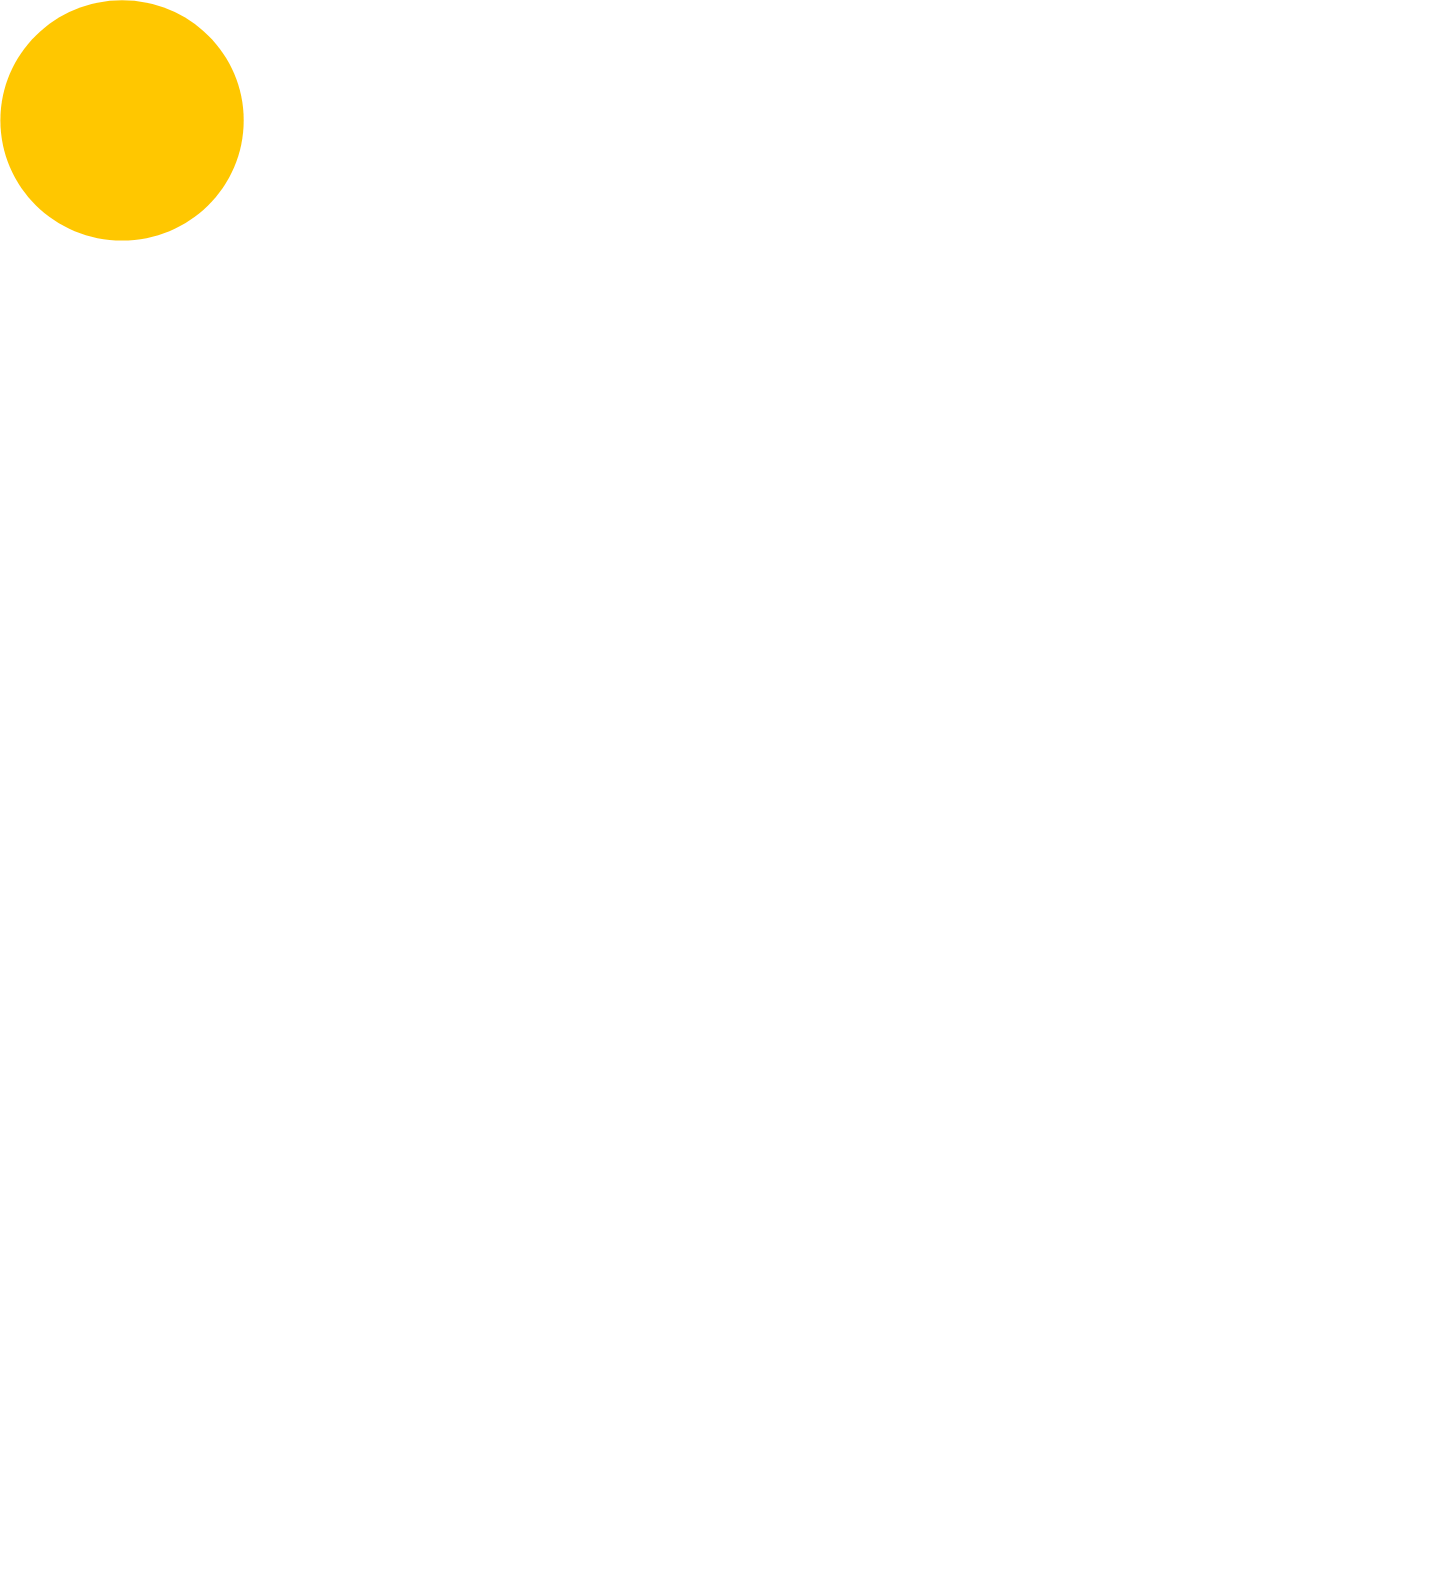 Intertek logo for dark backgrounds (transparent PNG)